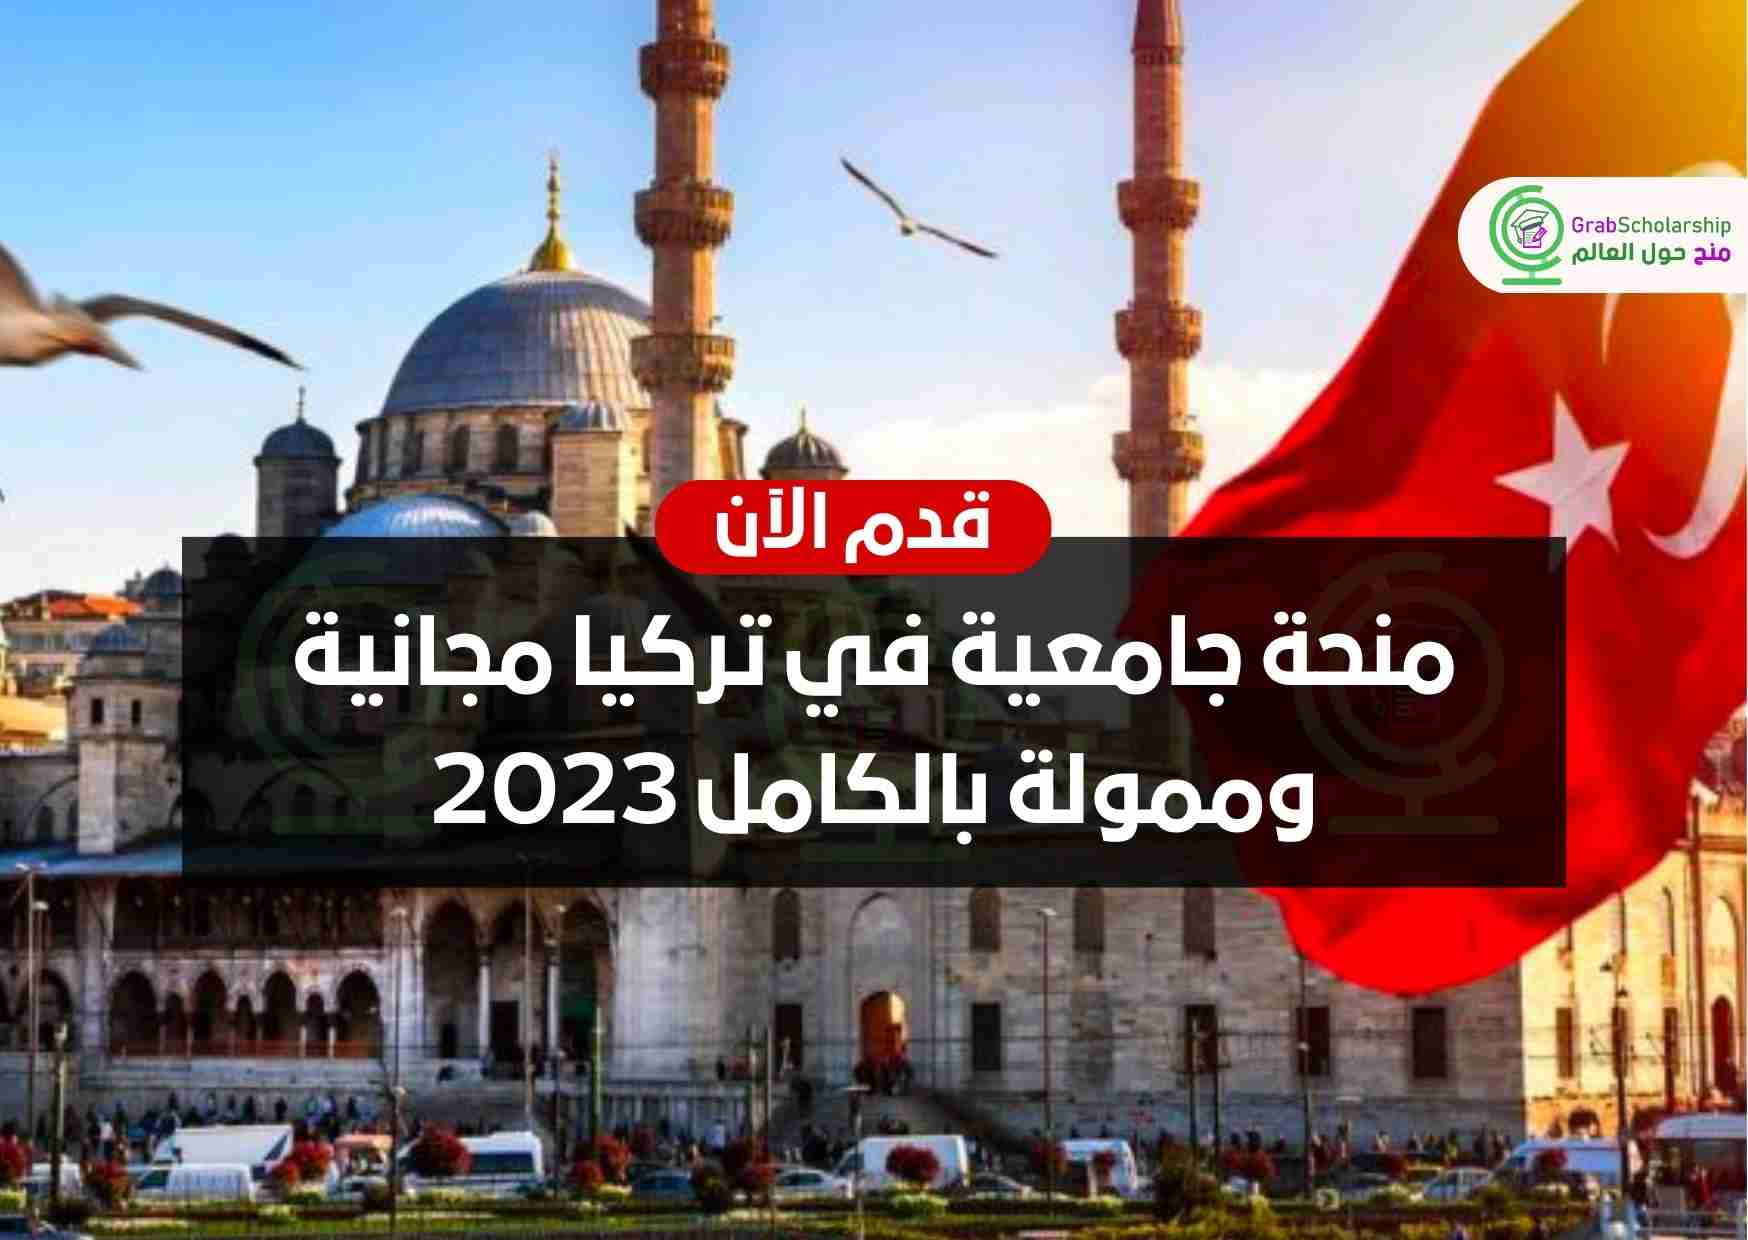 منحة جامعية في تركيا مجانية وممولة بالكامل 2023